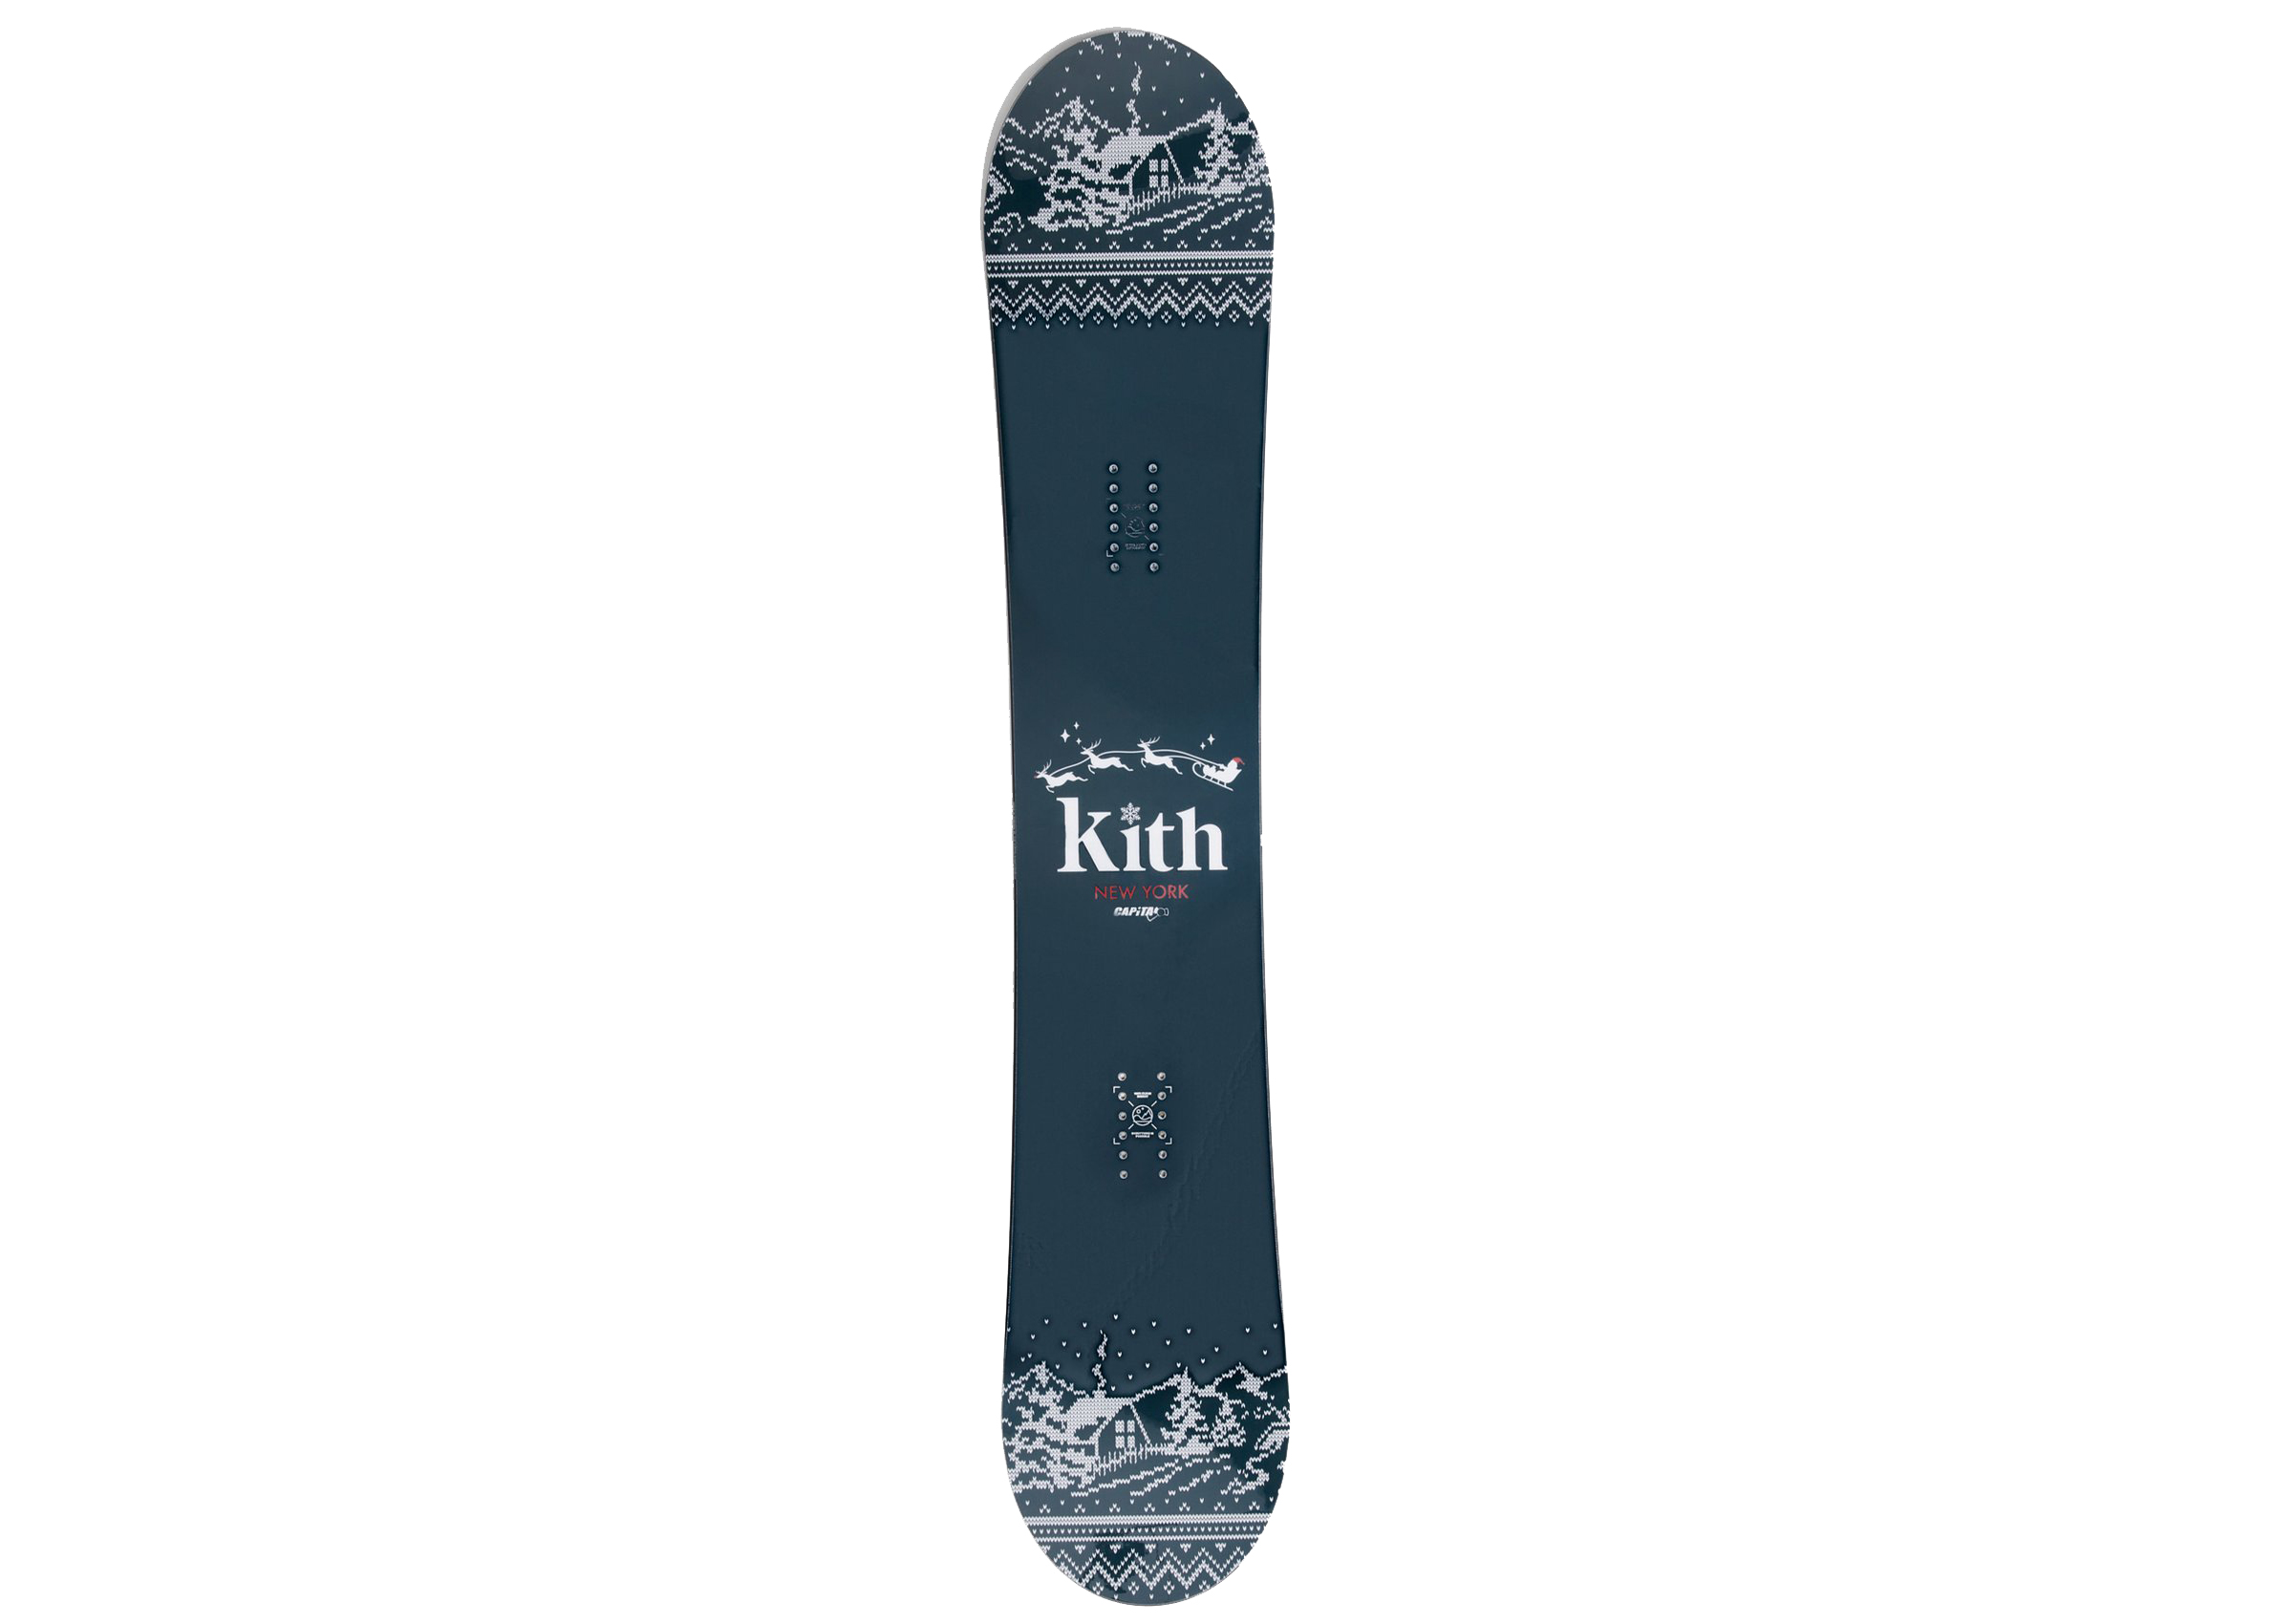 Kith for Capita Kithmas 158CM Snowboard - FW20 - US